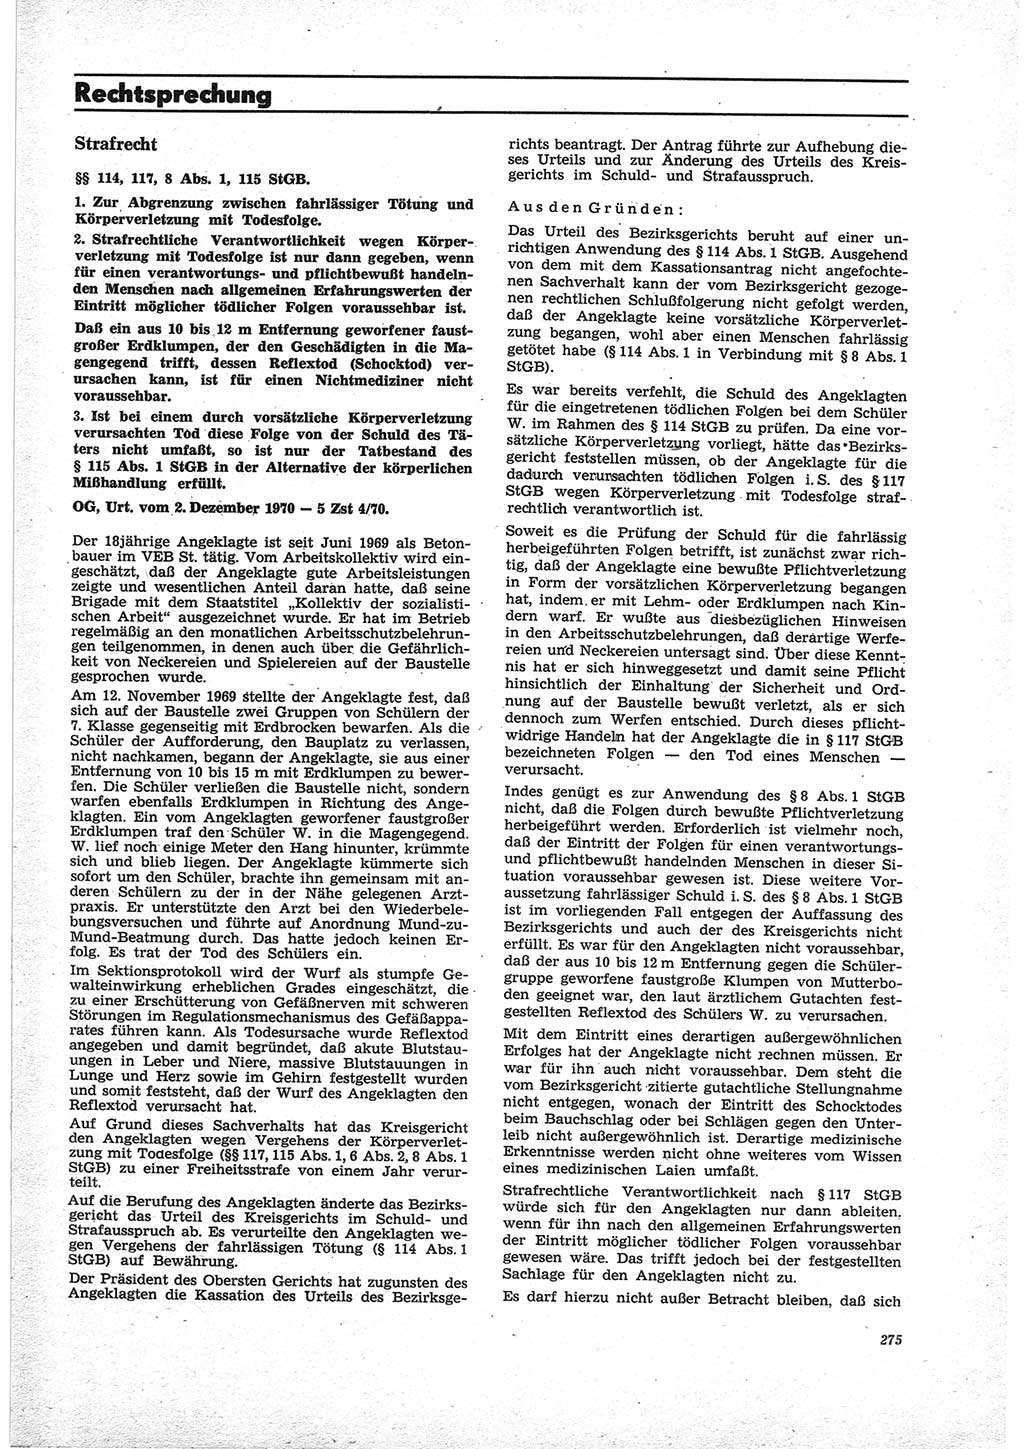 Neue Justiz (NJ), Zeitschrift für Recht und Rechtswissenschaft [Deutsche Demokratische Republik (DDR)], 25. Jahrgang 1971, Seite 275 (NJ DDR 1971, S. 275)